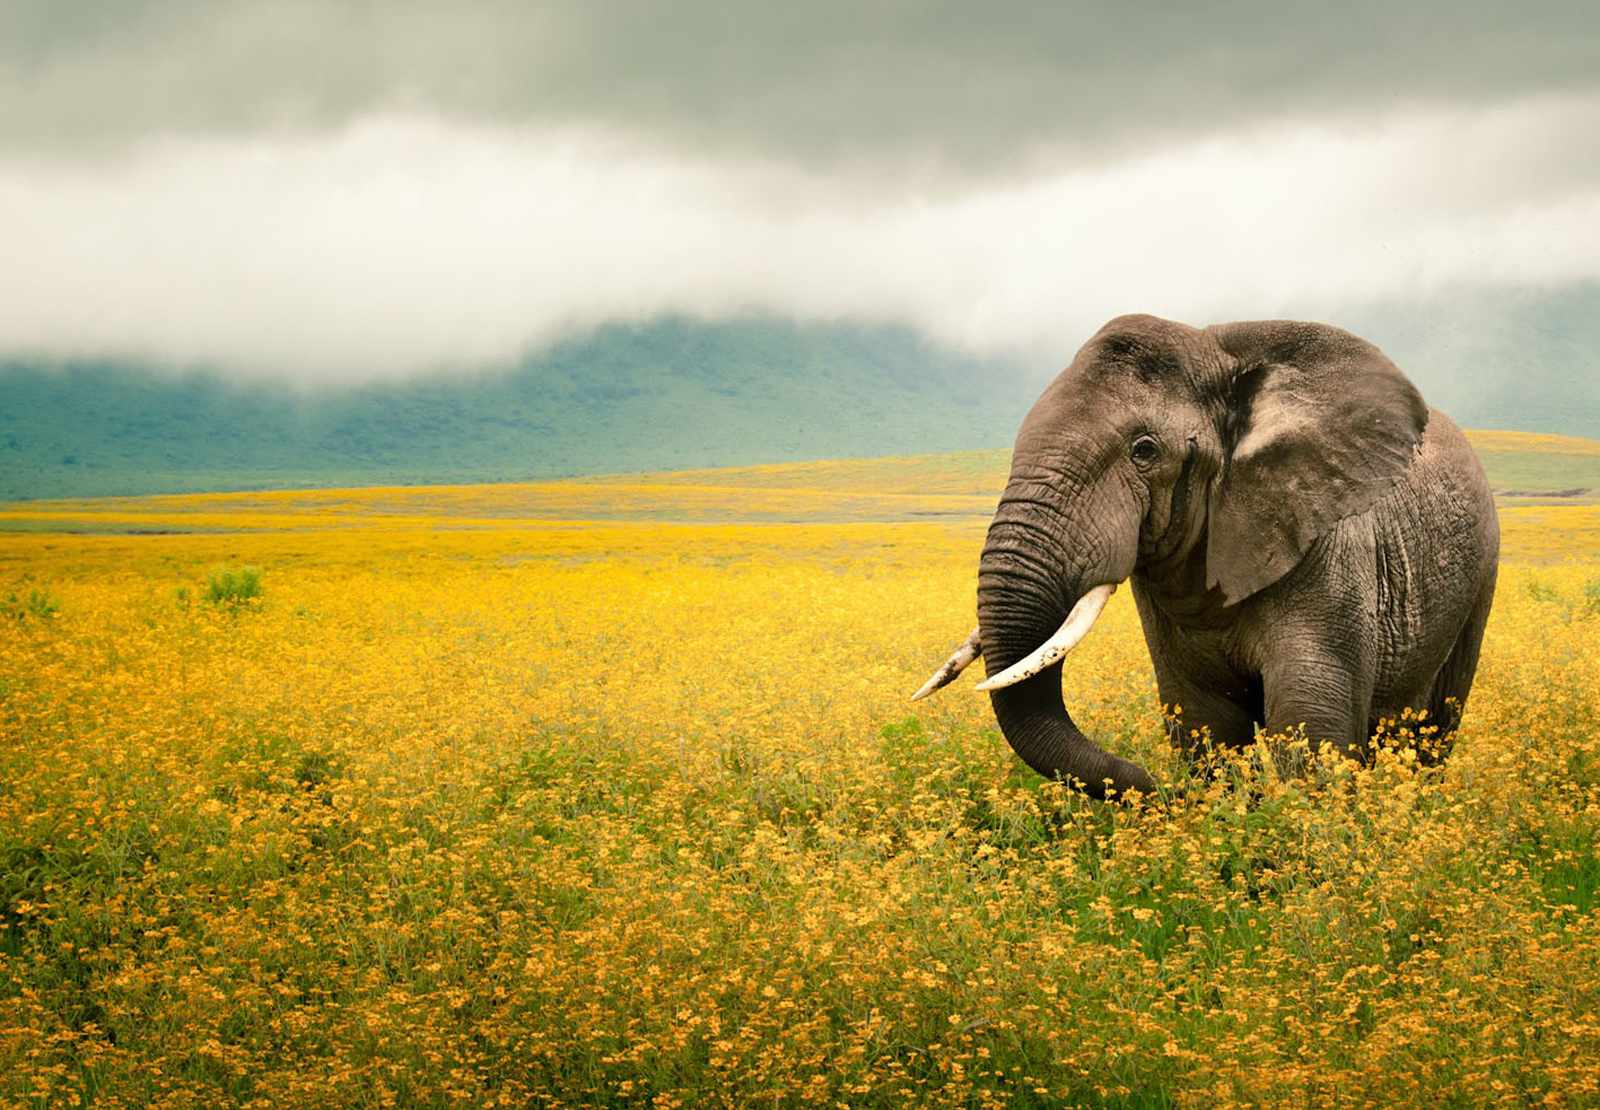 Full Screen Background Image - Elephant In Sunflower Field - HD Wallpaper 